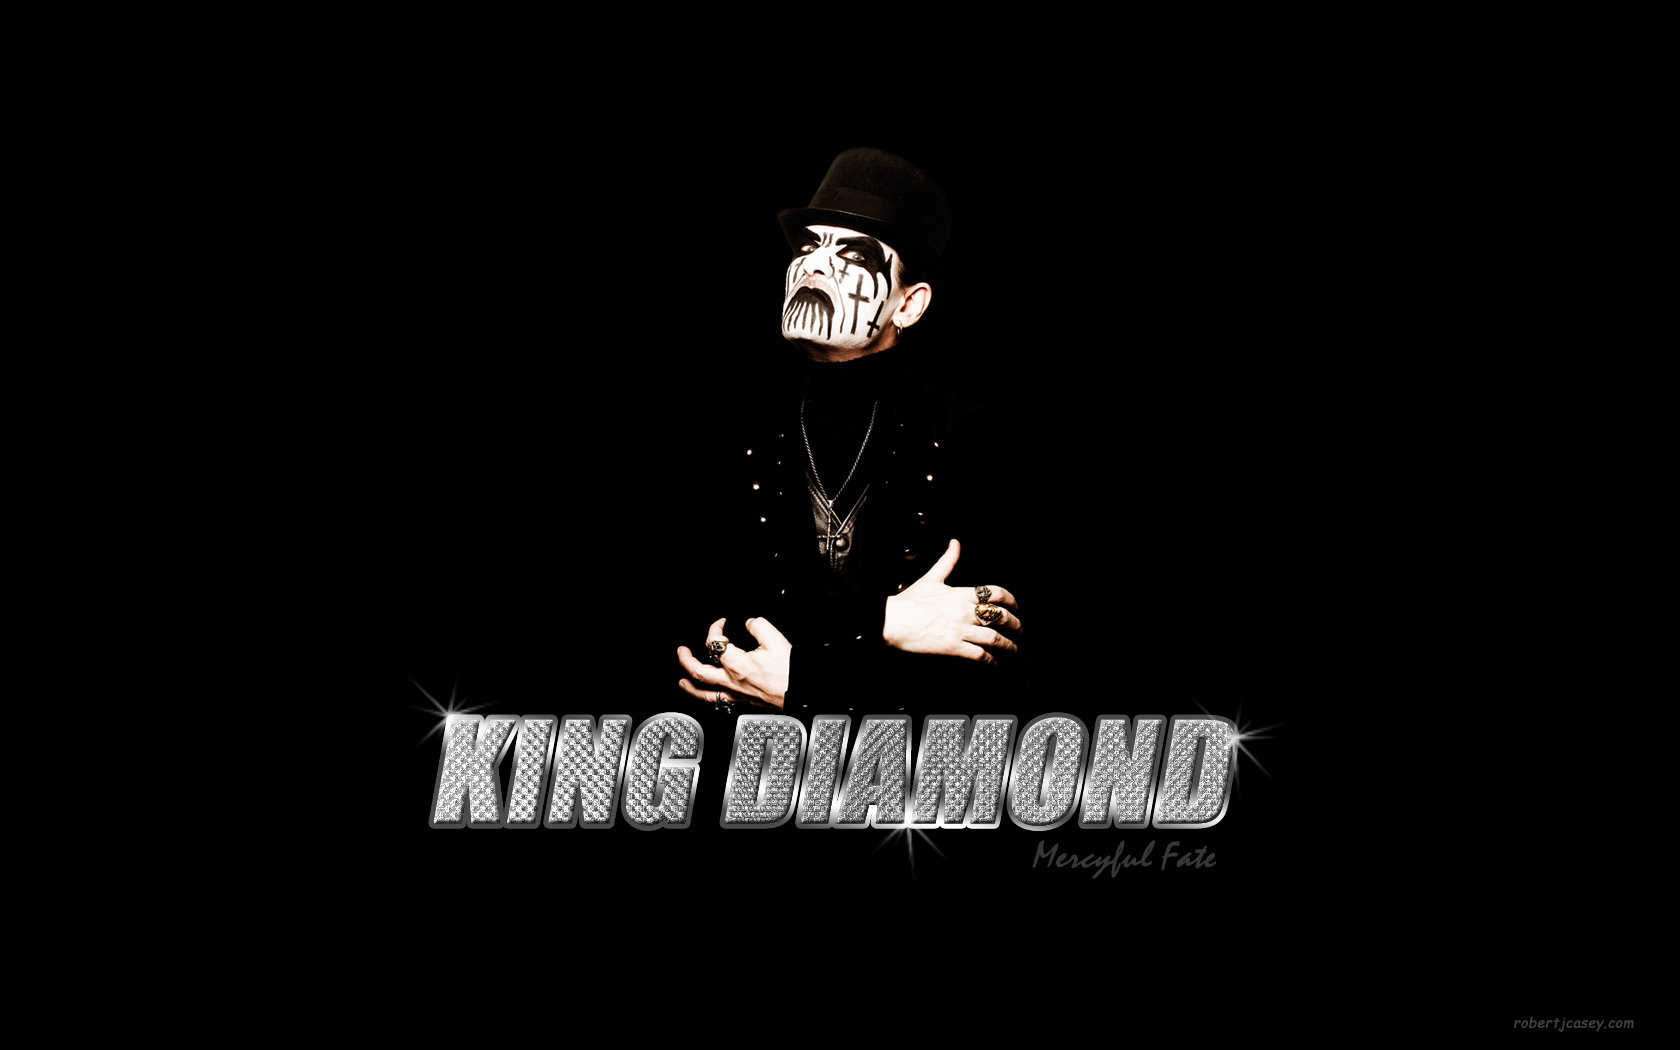 Download 600+ Background Hd King Paling Keren